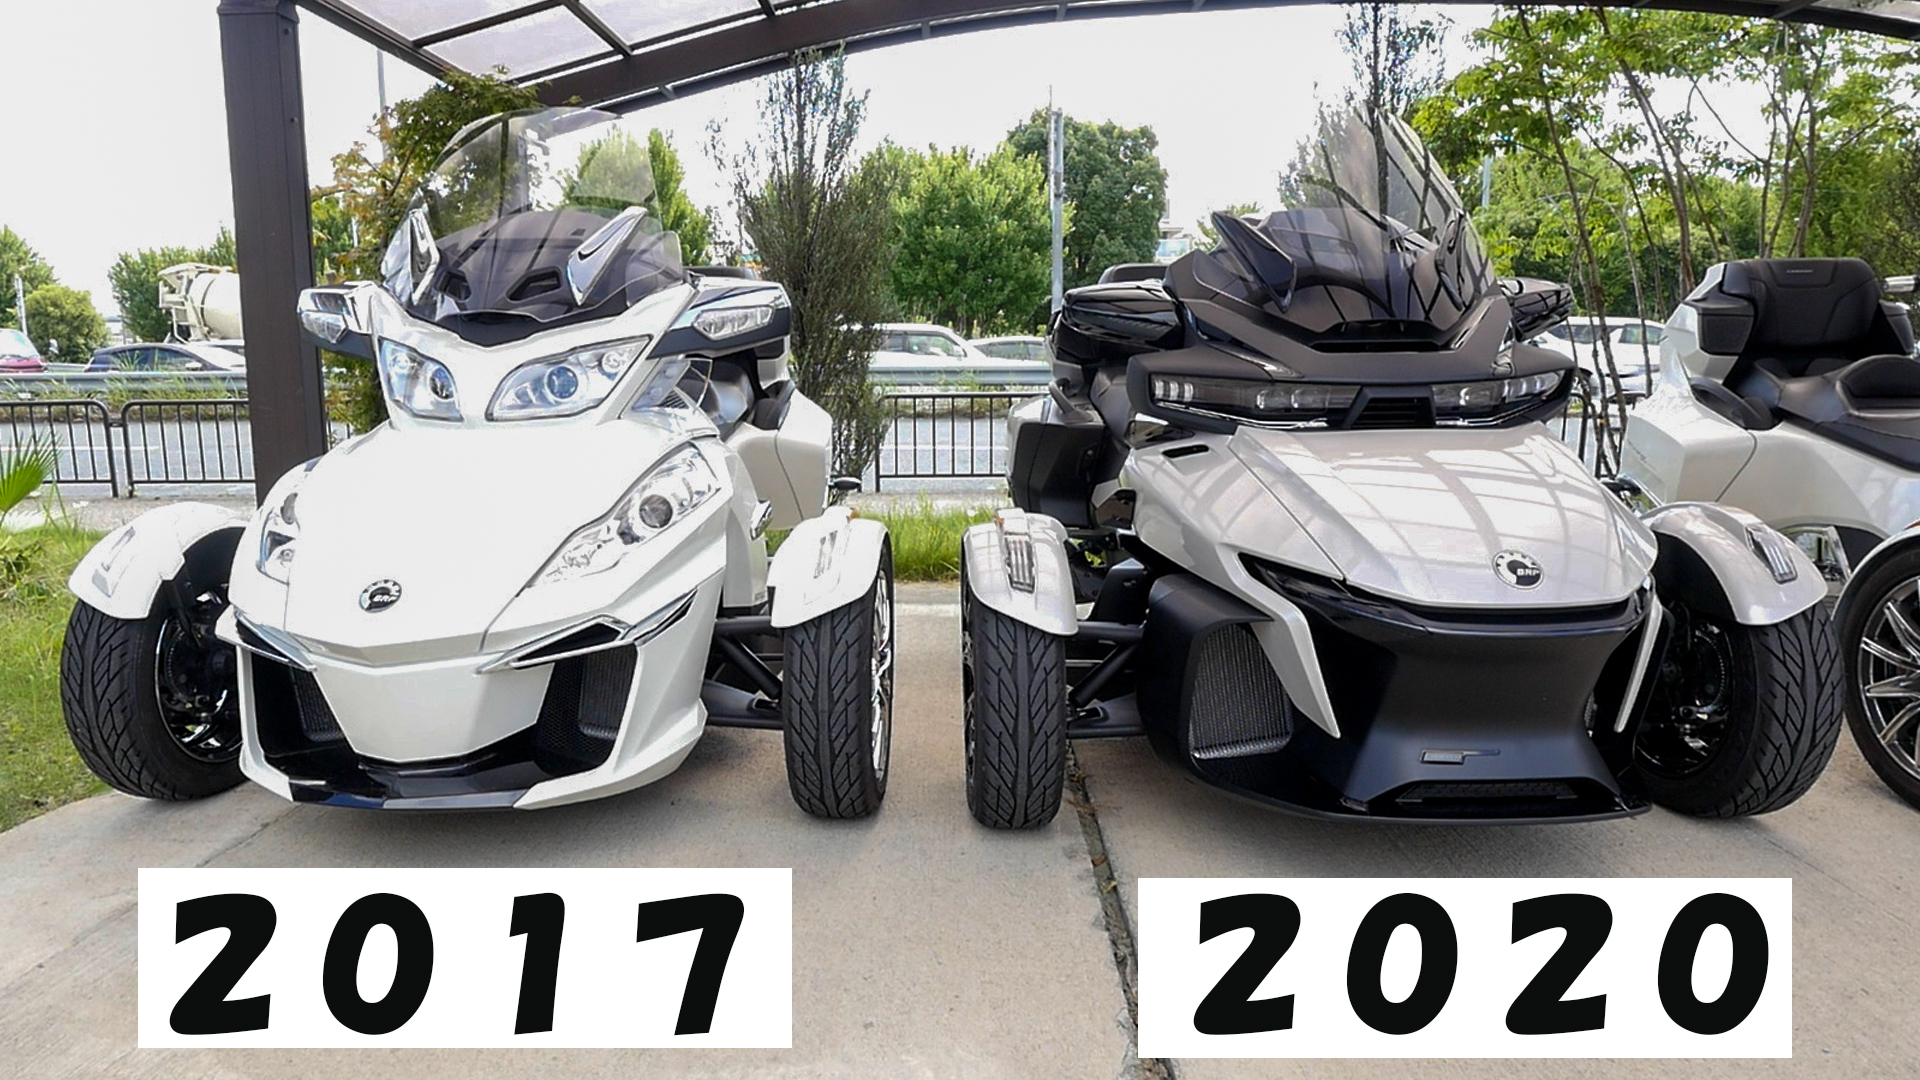 Spyder RT Limitedの2017モデルと2020モデル。2020で近未来感が増してます。スペックは大きくは変更なし。